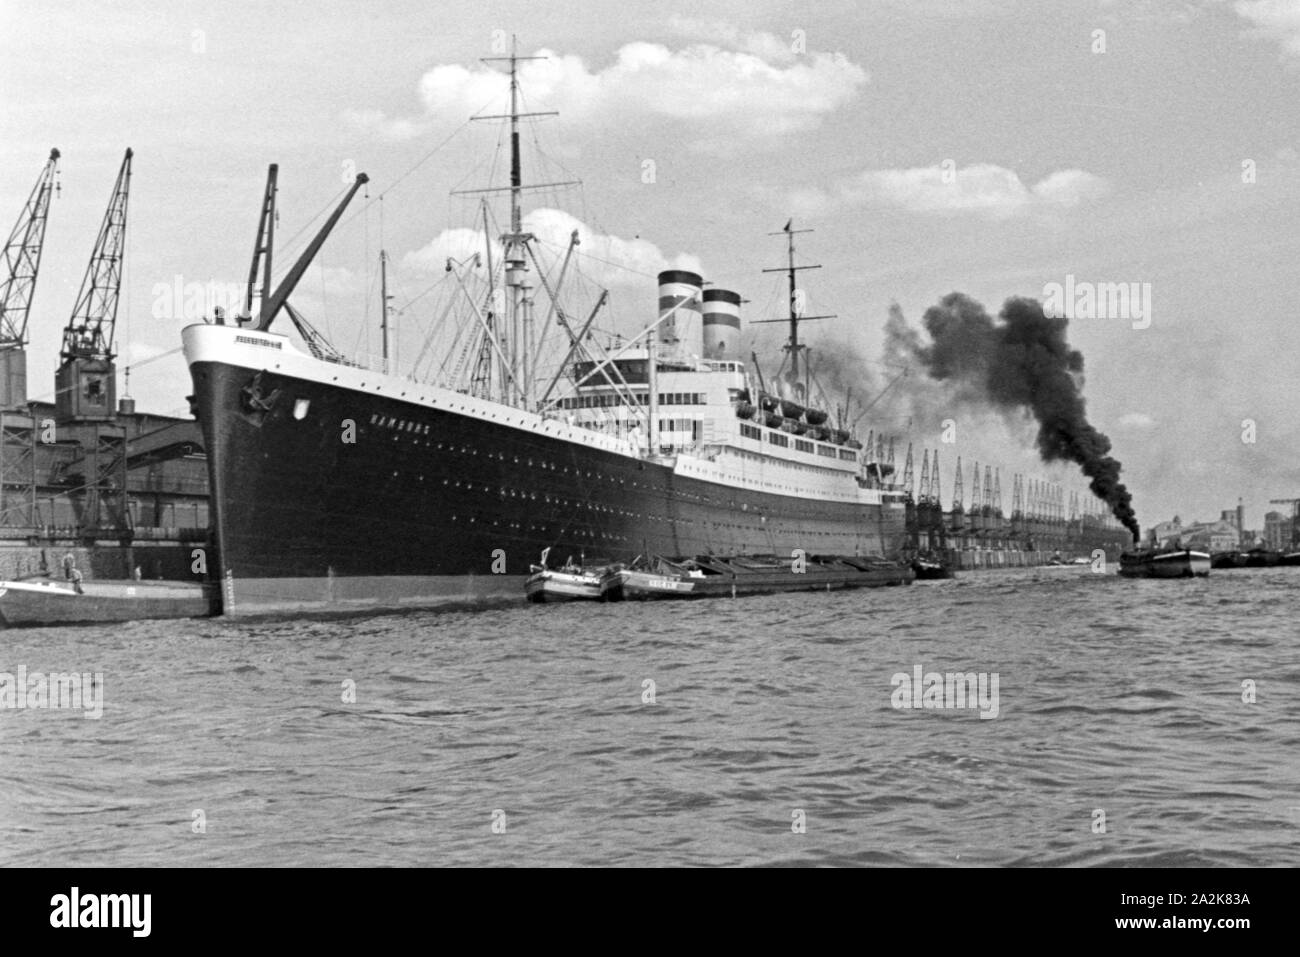 Das Passagierschiff "Hamburg" im Hafen von Hamburg, 1930er Jahre. Passagier Dampf schiff 'Hamburg' am Hamburger Hafen, 1930er Jahre. Stockfoto